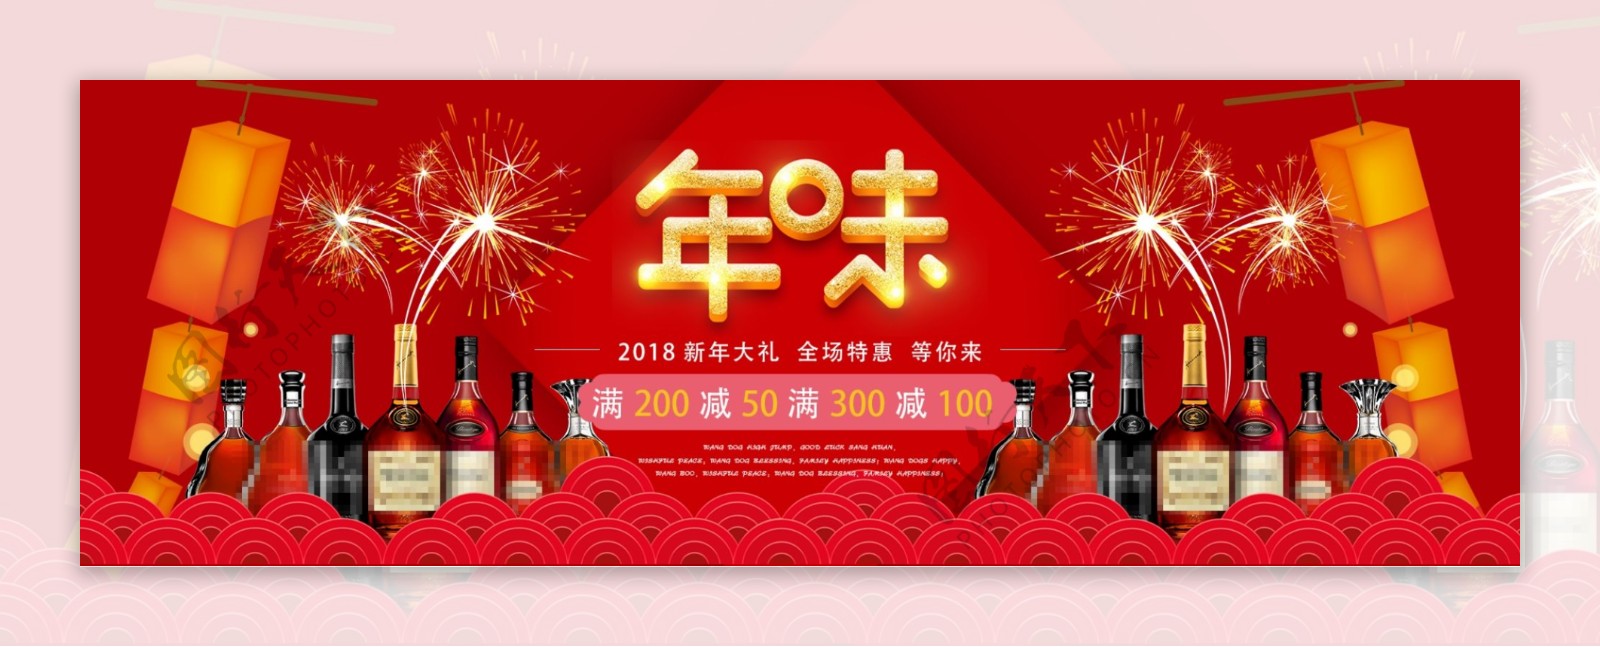 电商淘宝春节年味酒海报banner